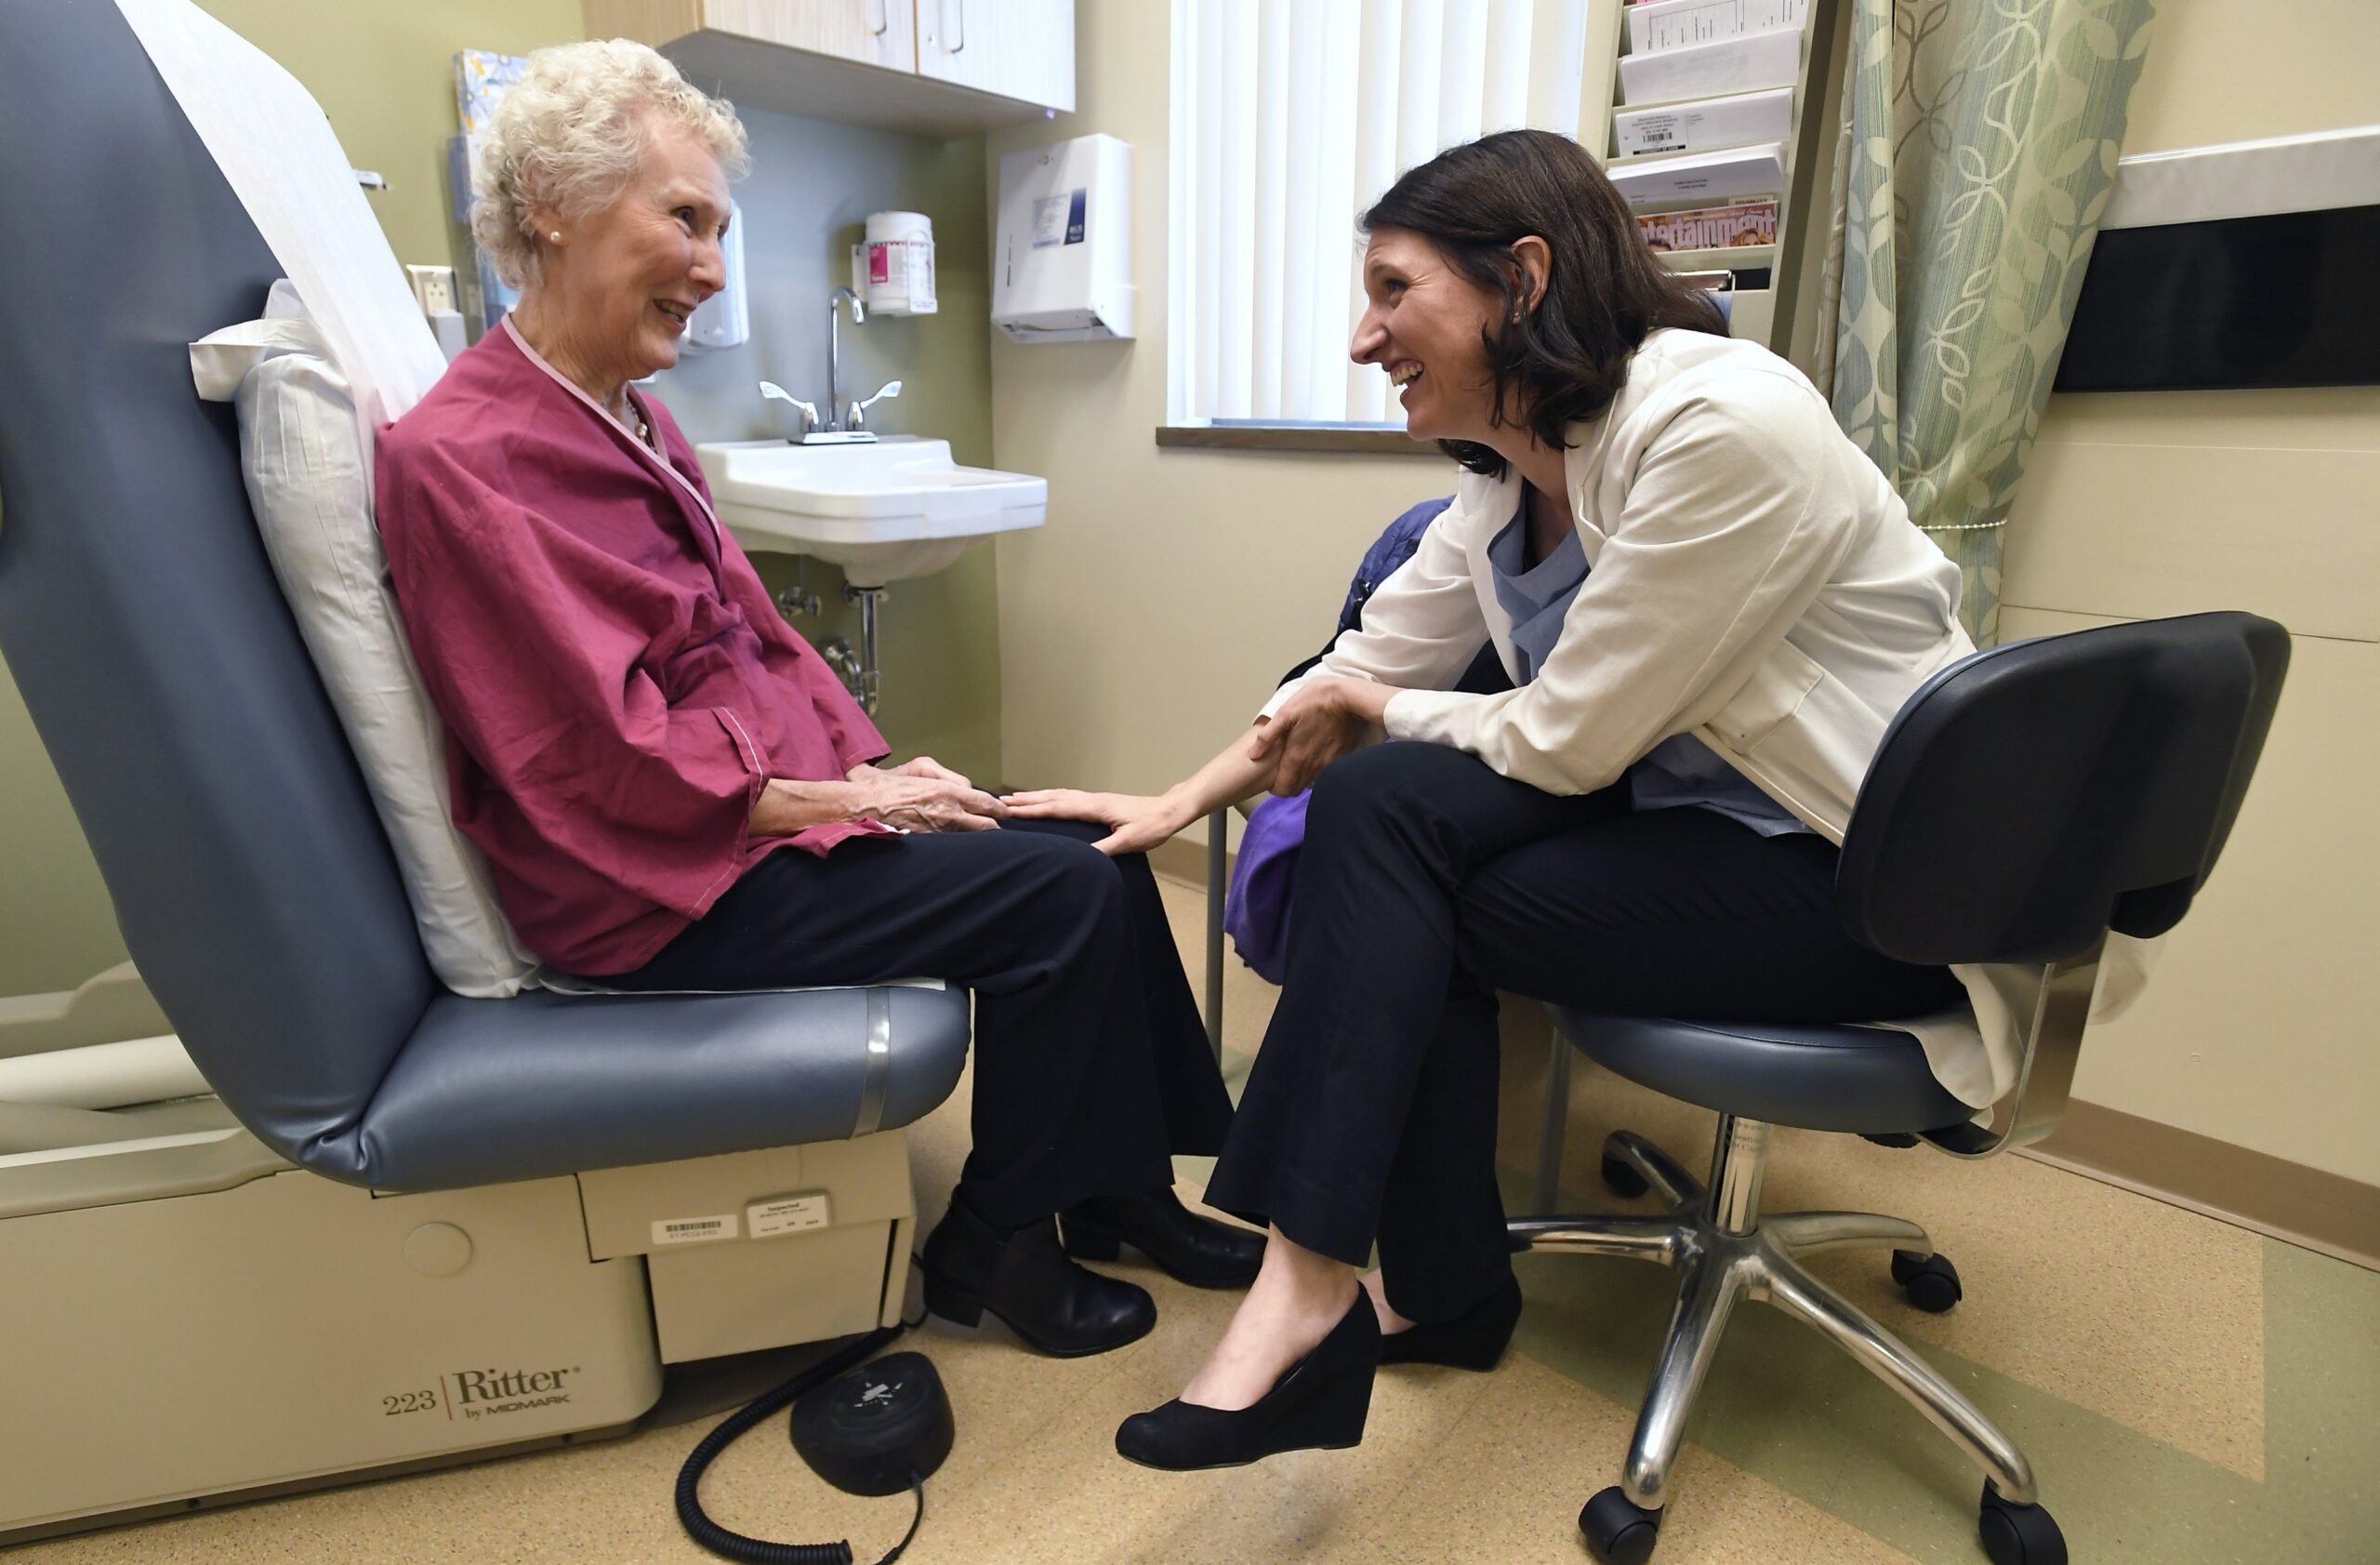 Dr. Allison Magnuson, left, speaks with patient Nancy Simpson